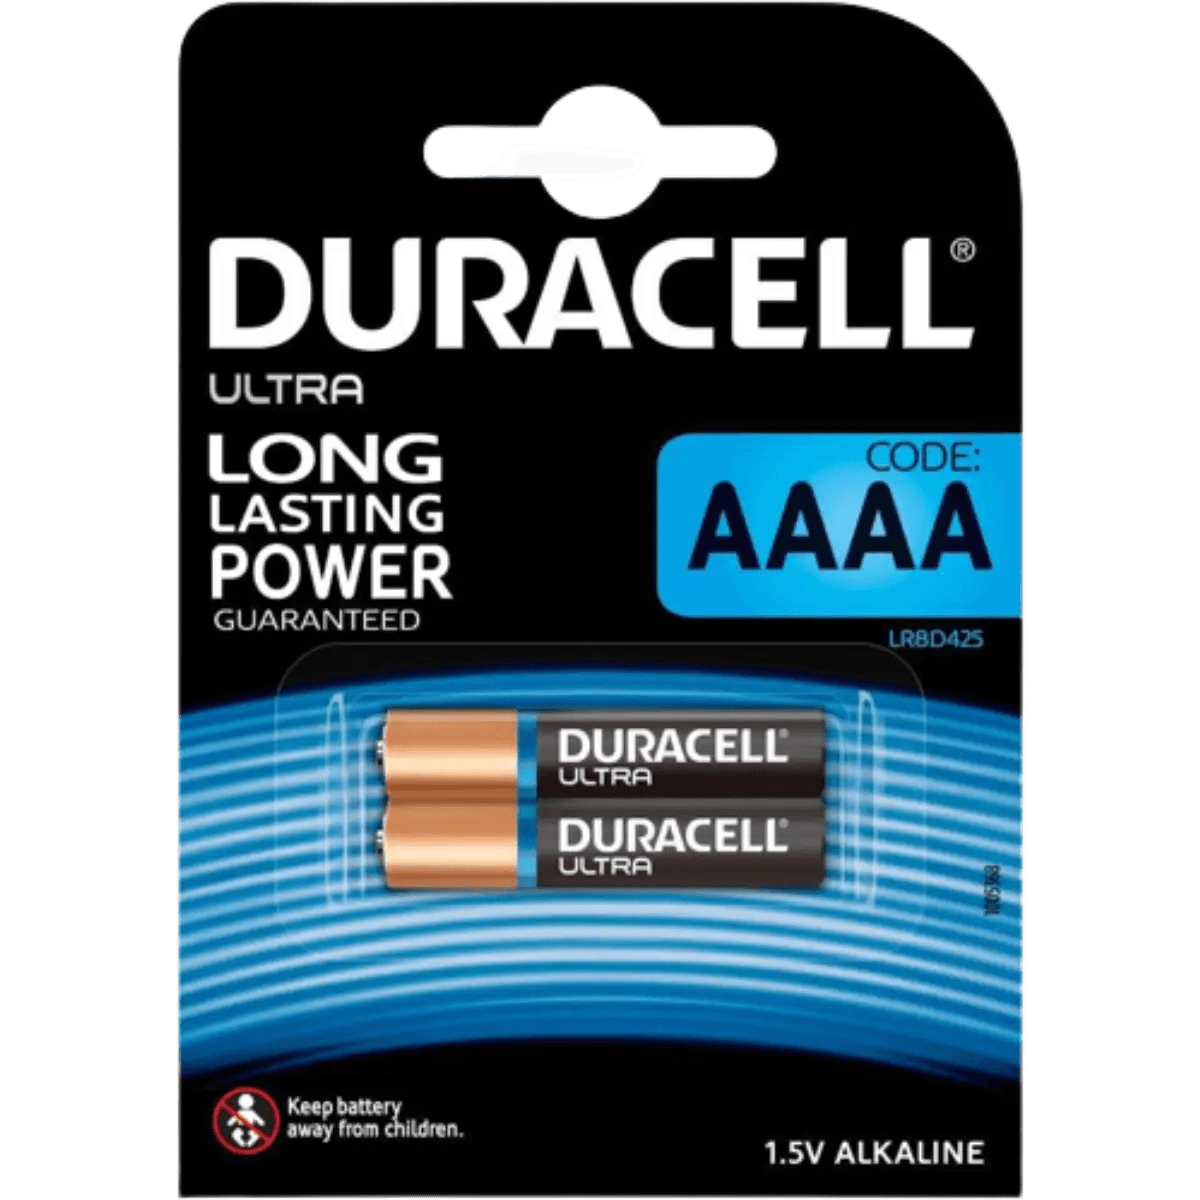 Duracell AAAA Pile alcaline 1,5V, lot de 2 (LR8D425), pour stylets